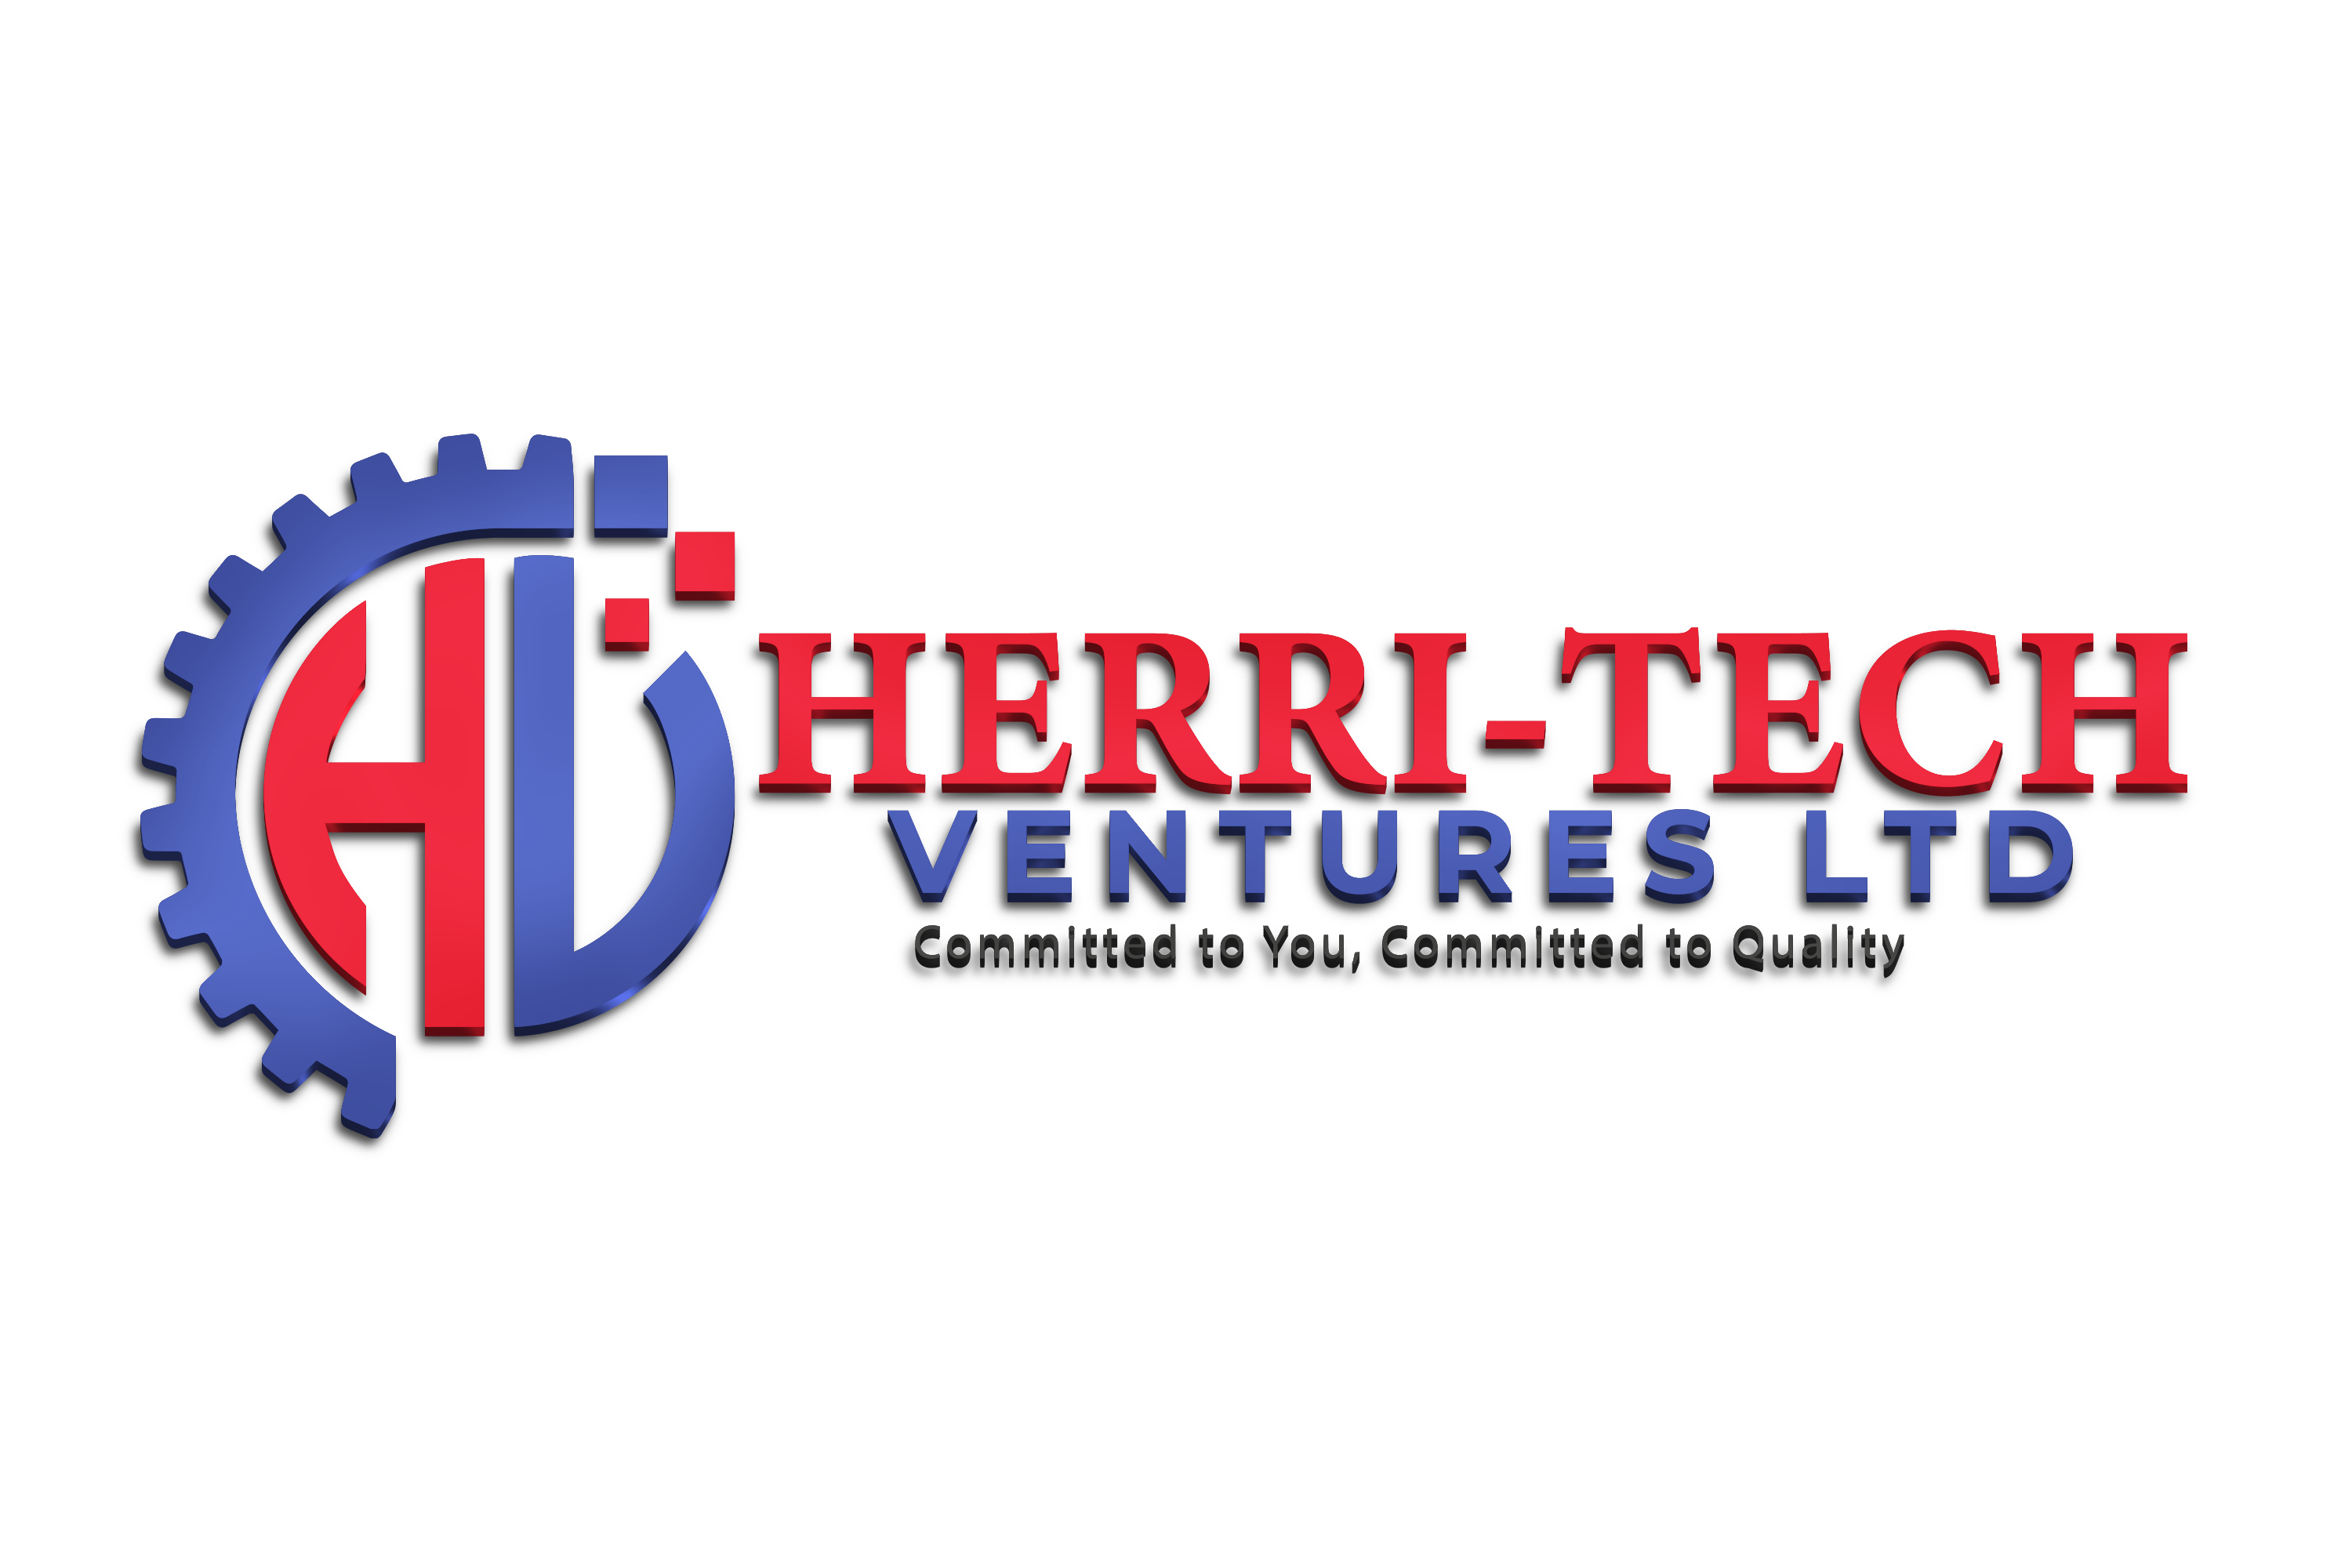 herritech ventures ltd